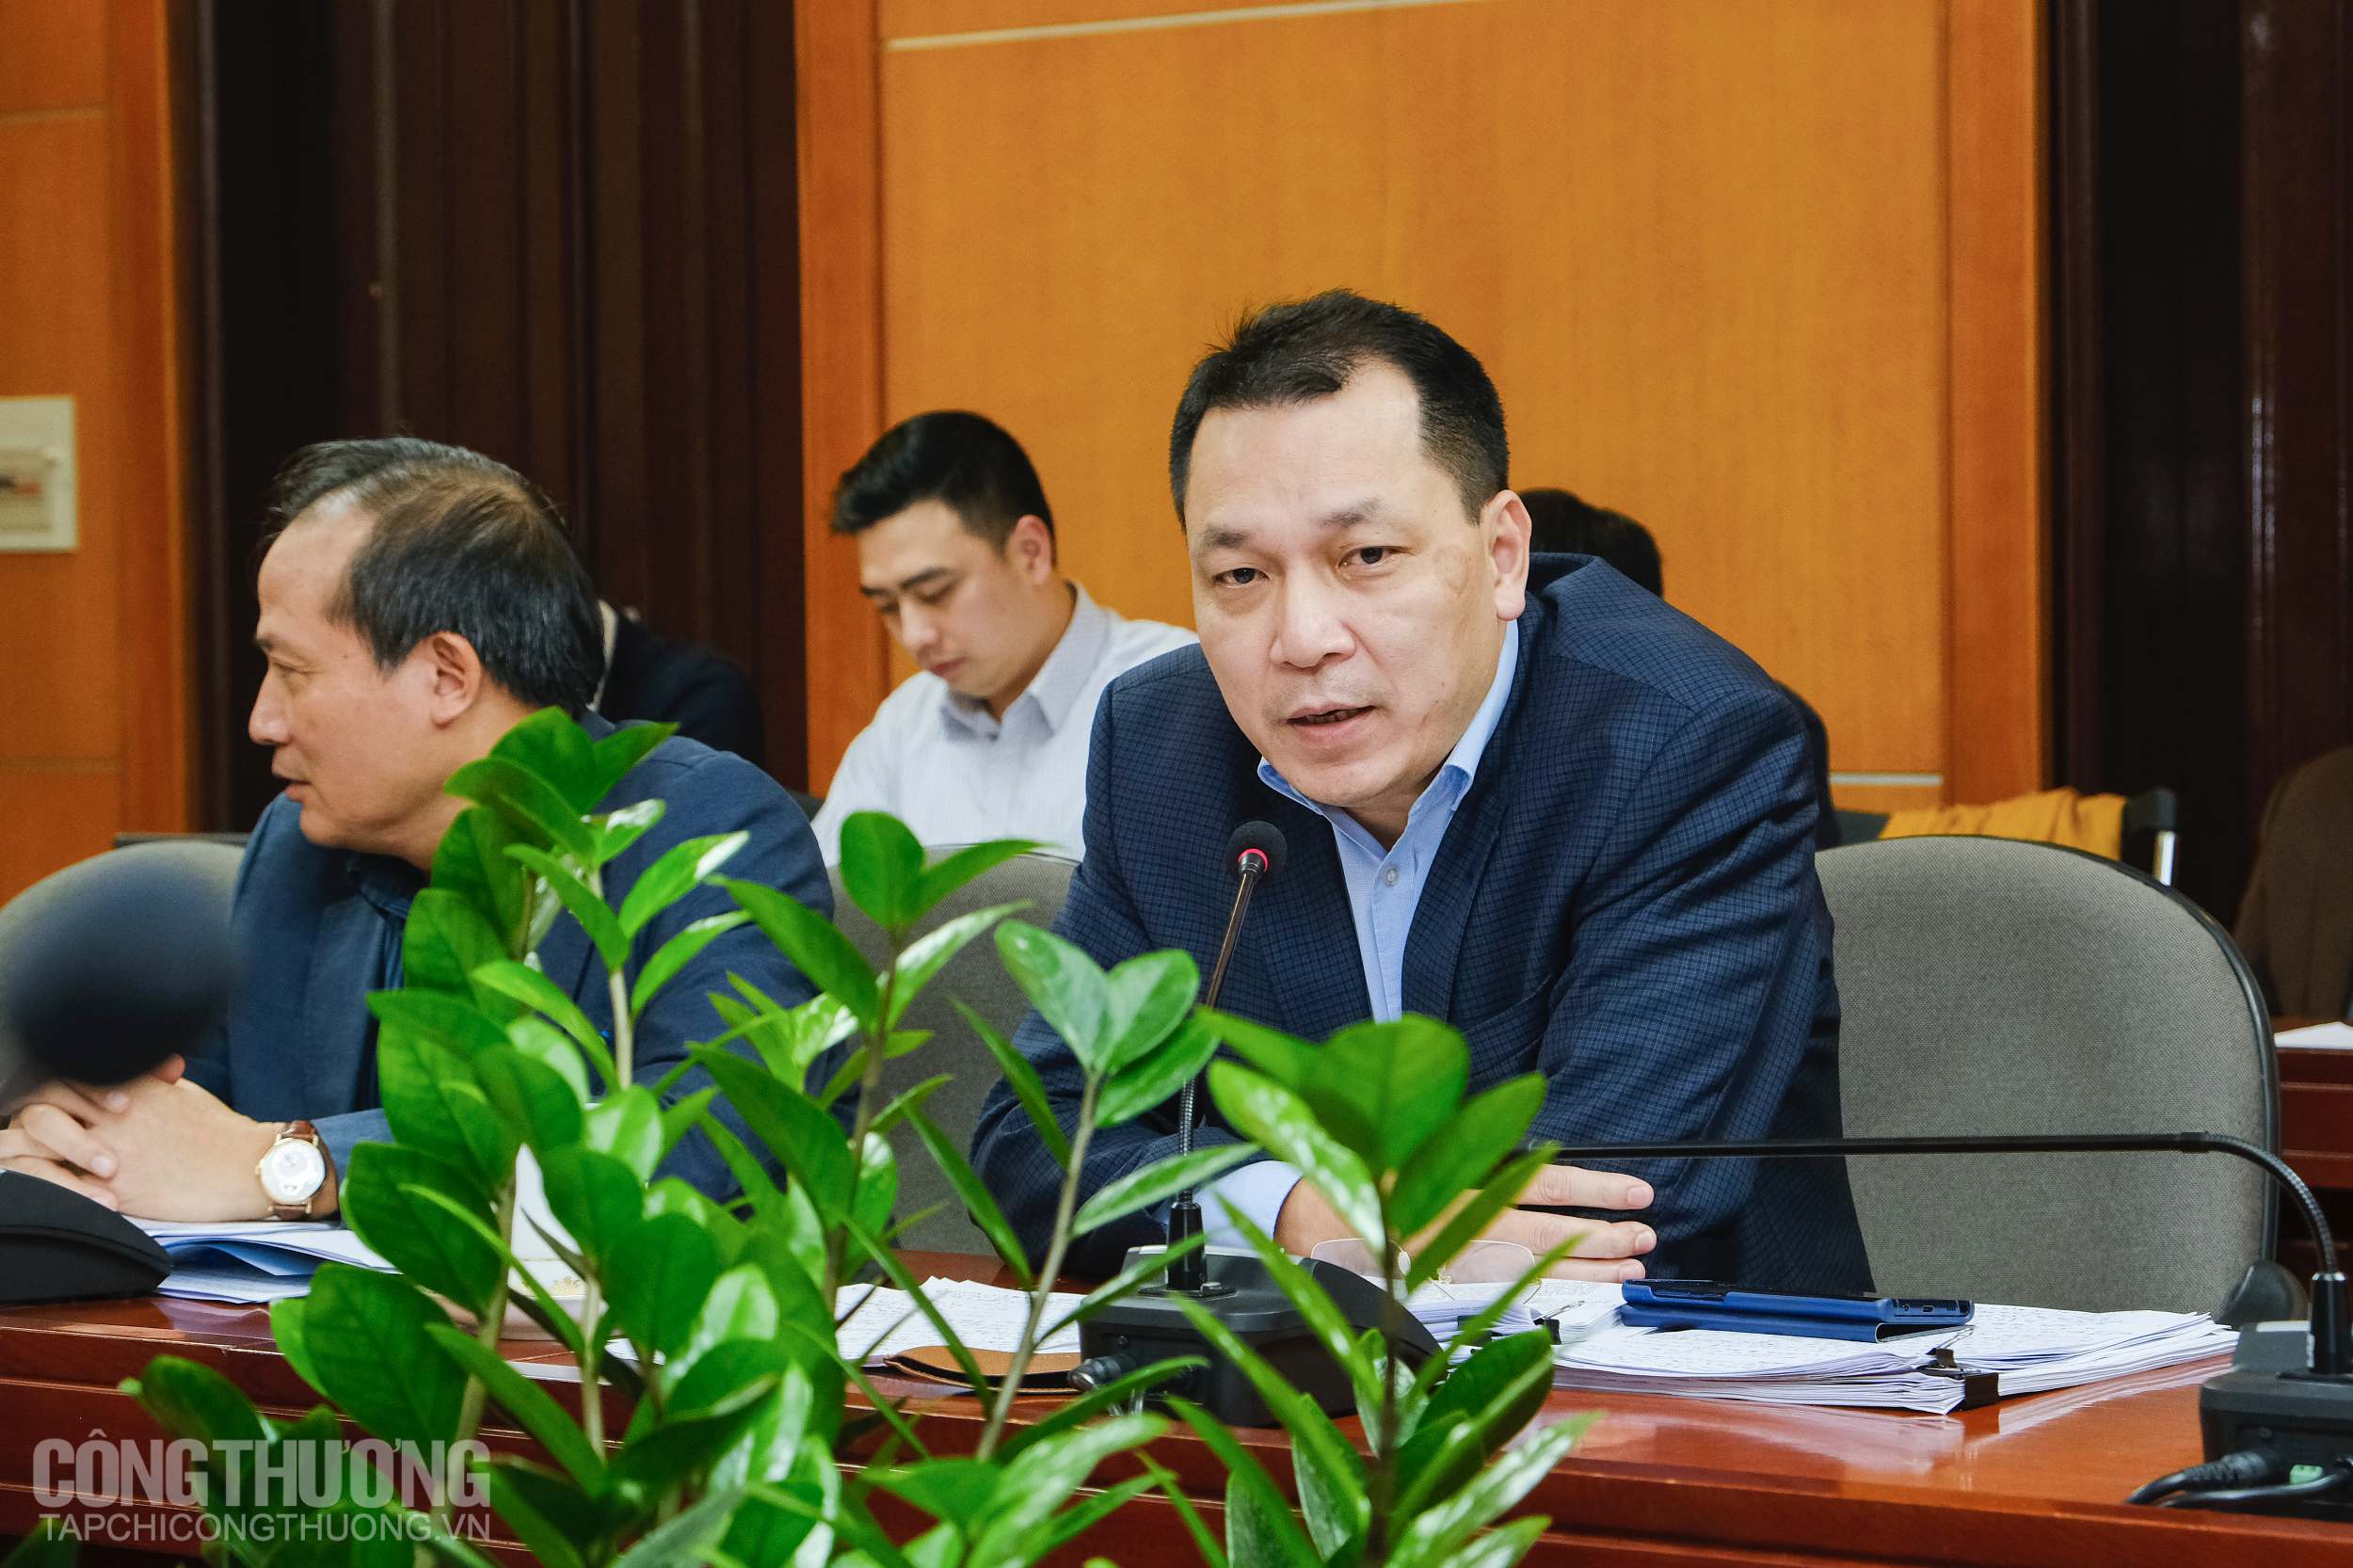 Thứ trưởng Đặng Hoàng An làm việc với Tổng cục Quản lý thị trường để sớm có báo cáo về hiện tượng tái sử dụng, đưa vào thị trường vật tư y tế dùng 1 lần